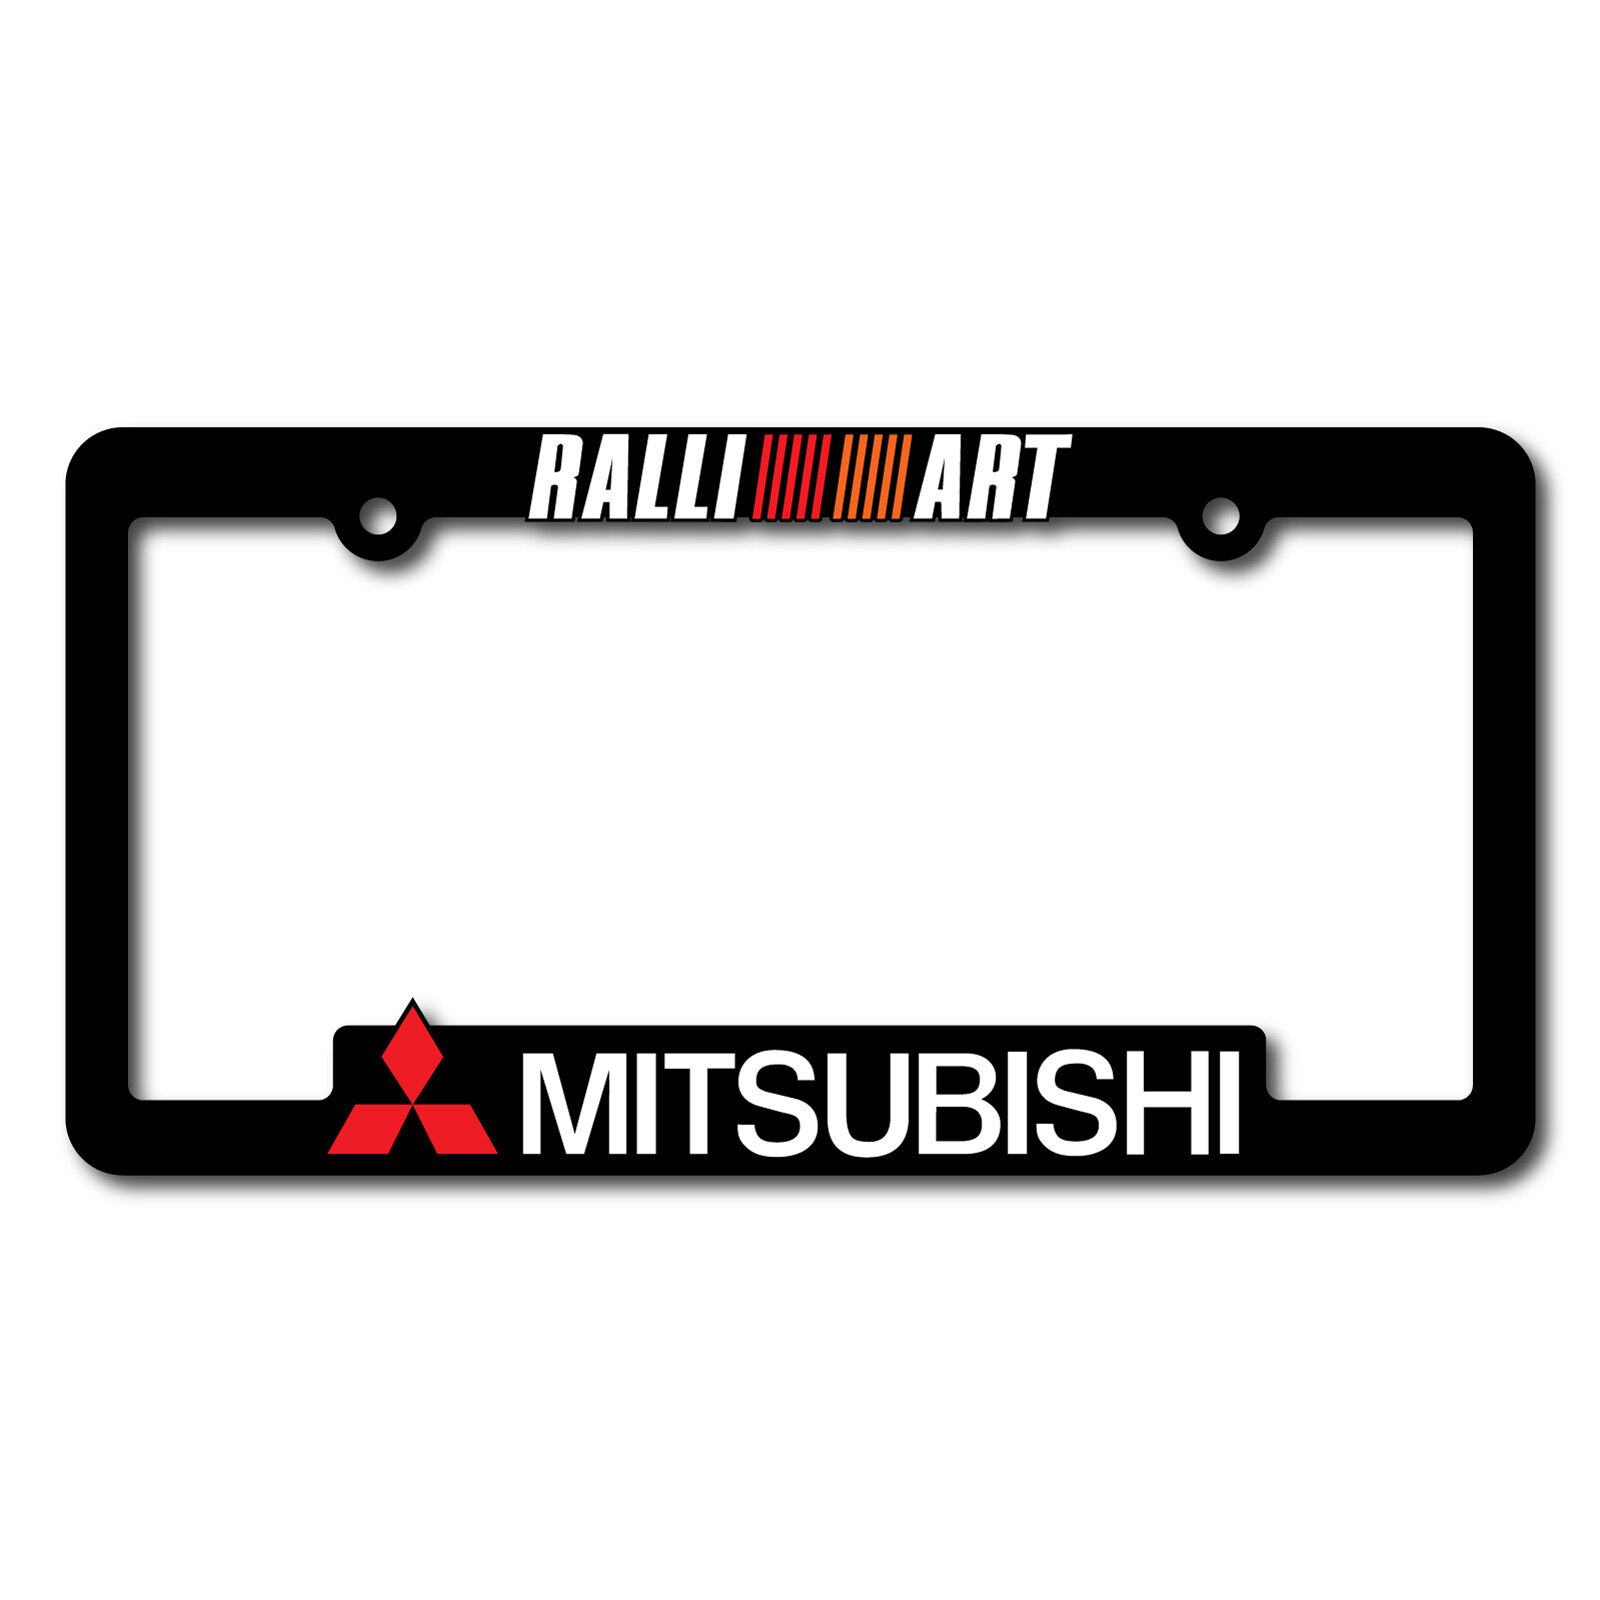 MITSUBISHI-License-Plate-Frames-RALLIART-EVO-Lancer-Evolution-X-6-7-8-9-10-11-12